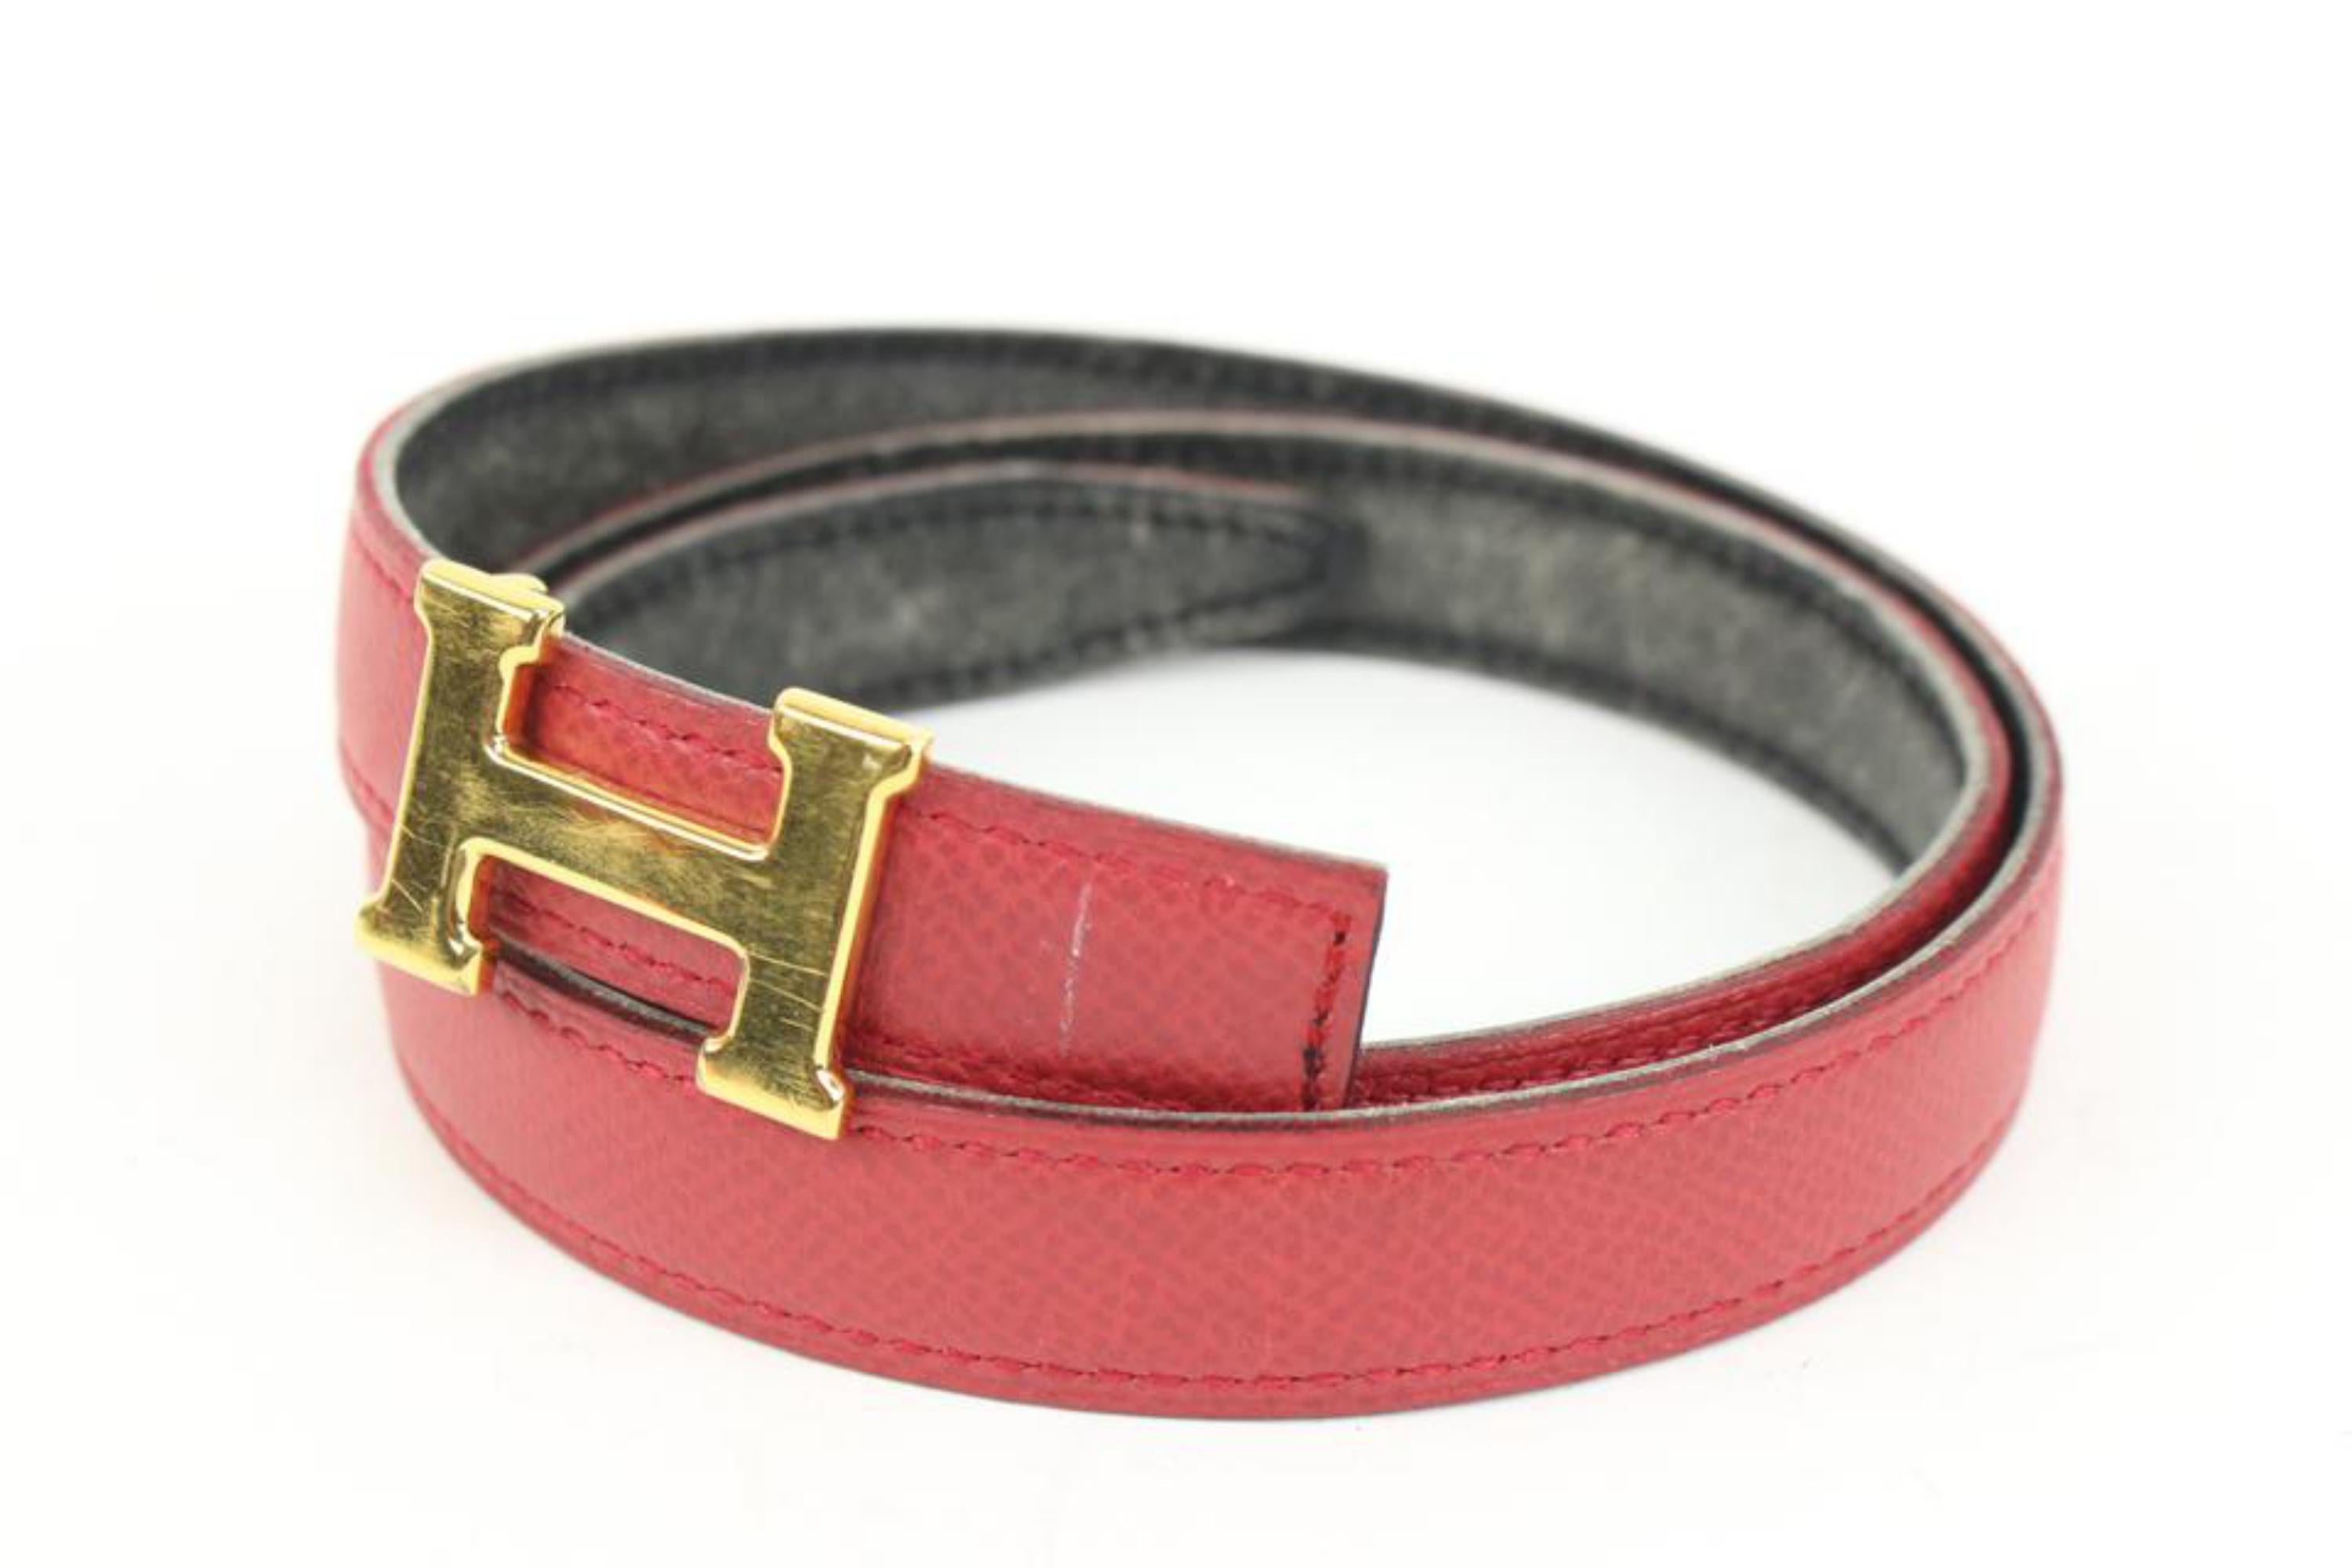 Hermès 18mm Gold x Black x Red Reversible H Logo Thin Belt Kit 25h321s
Code de date/Numéro de série : Z dans un cercle
Fabriqué en : France
Mesures : Longueur :  32